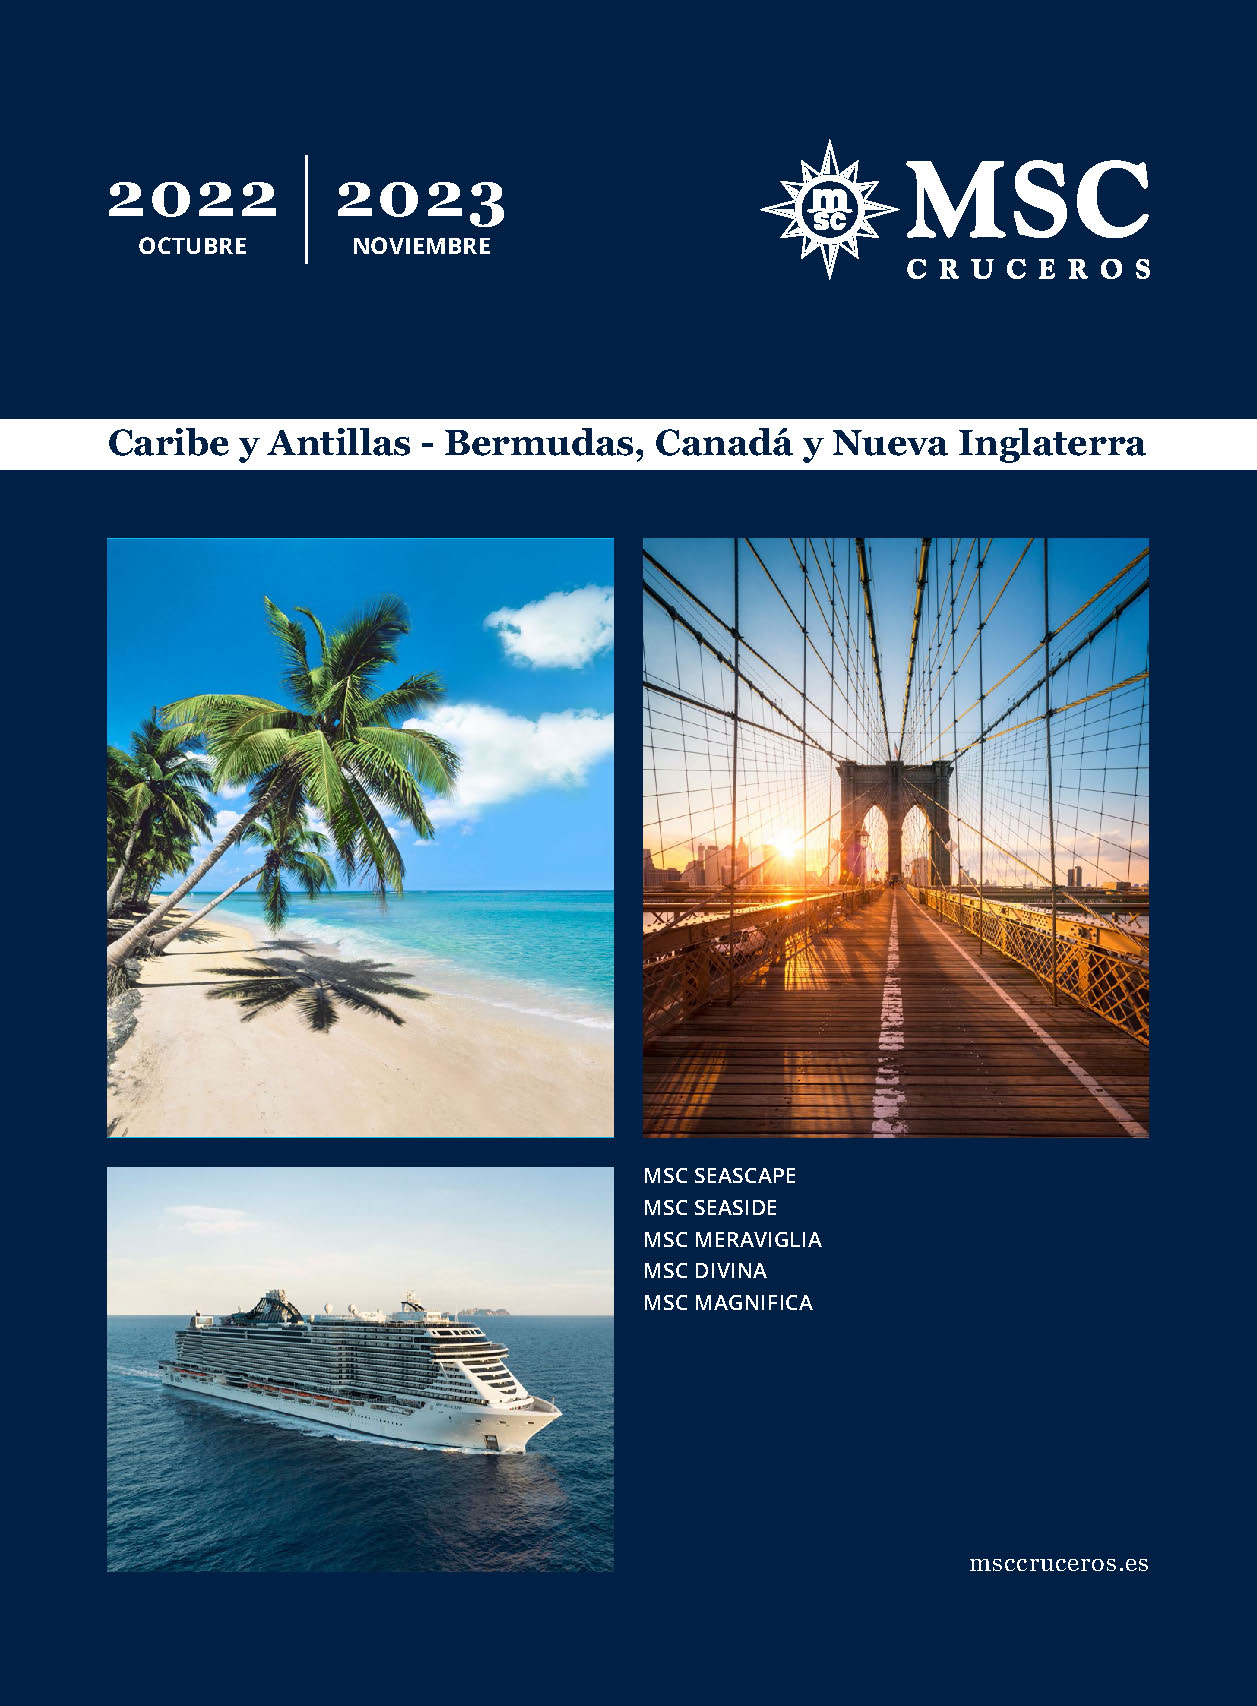 Catalogo MSC Cruceros por el Caribe y Antillas Bermudas Canada y Nueva Inglaterra 2022-2023